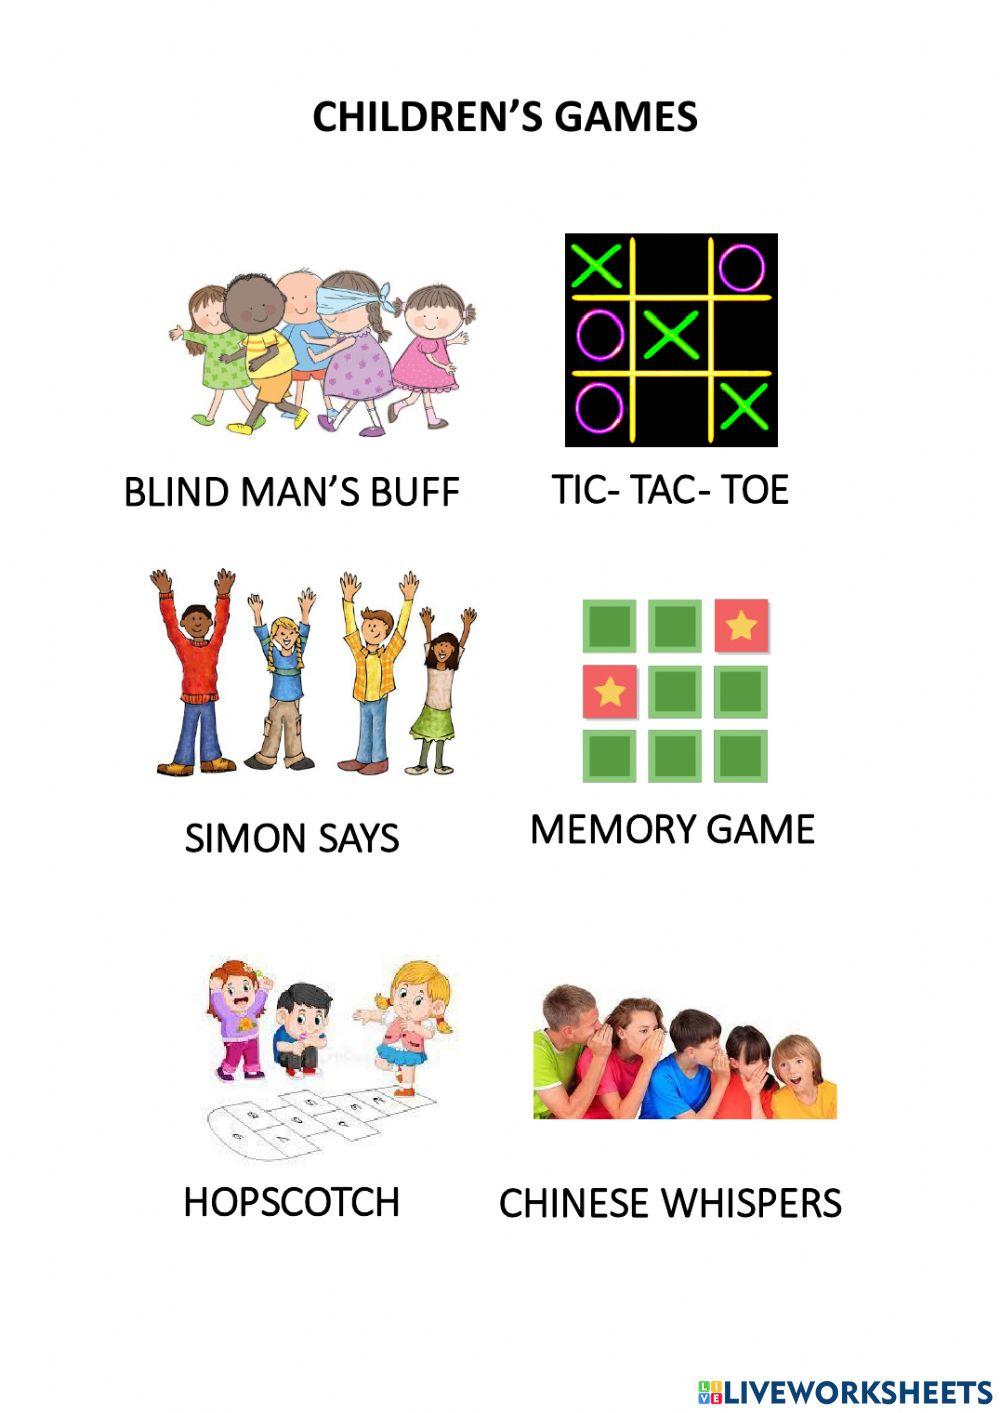 Children's games